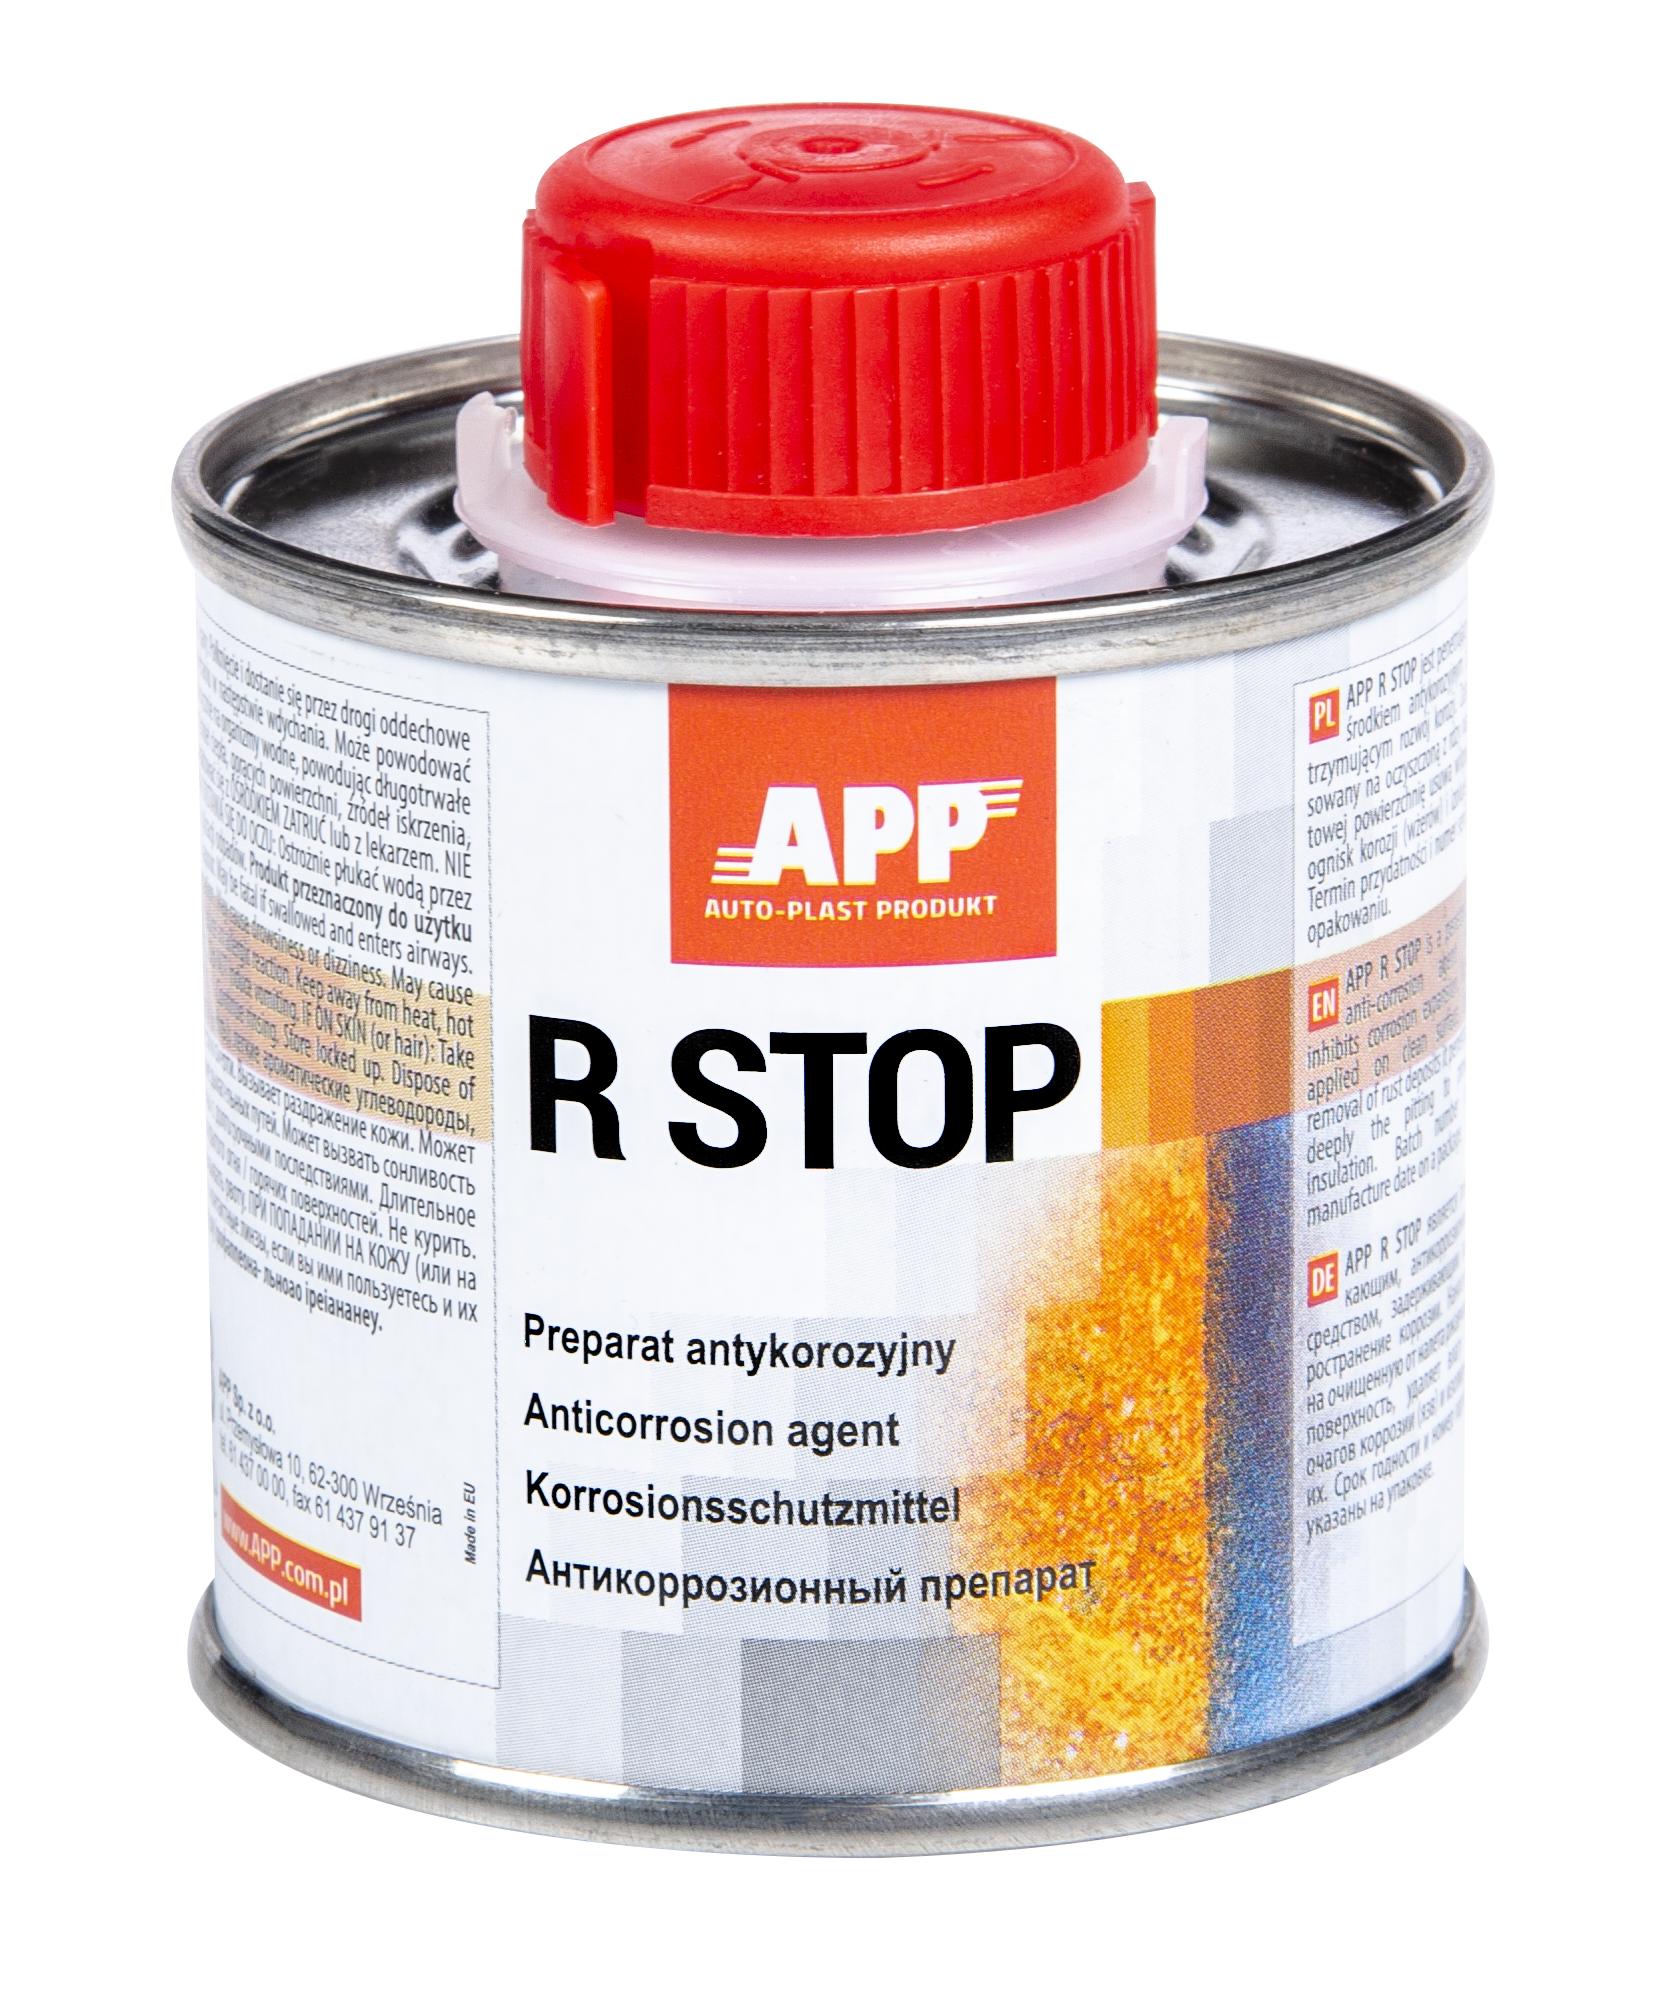 APP 021100 R-STOP - Rostumwandler Rostschutz Korrosionsschutzmittel 100 ml